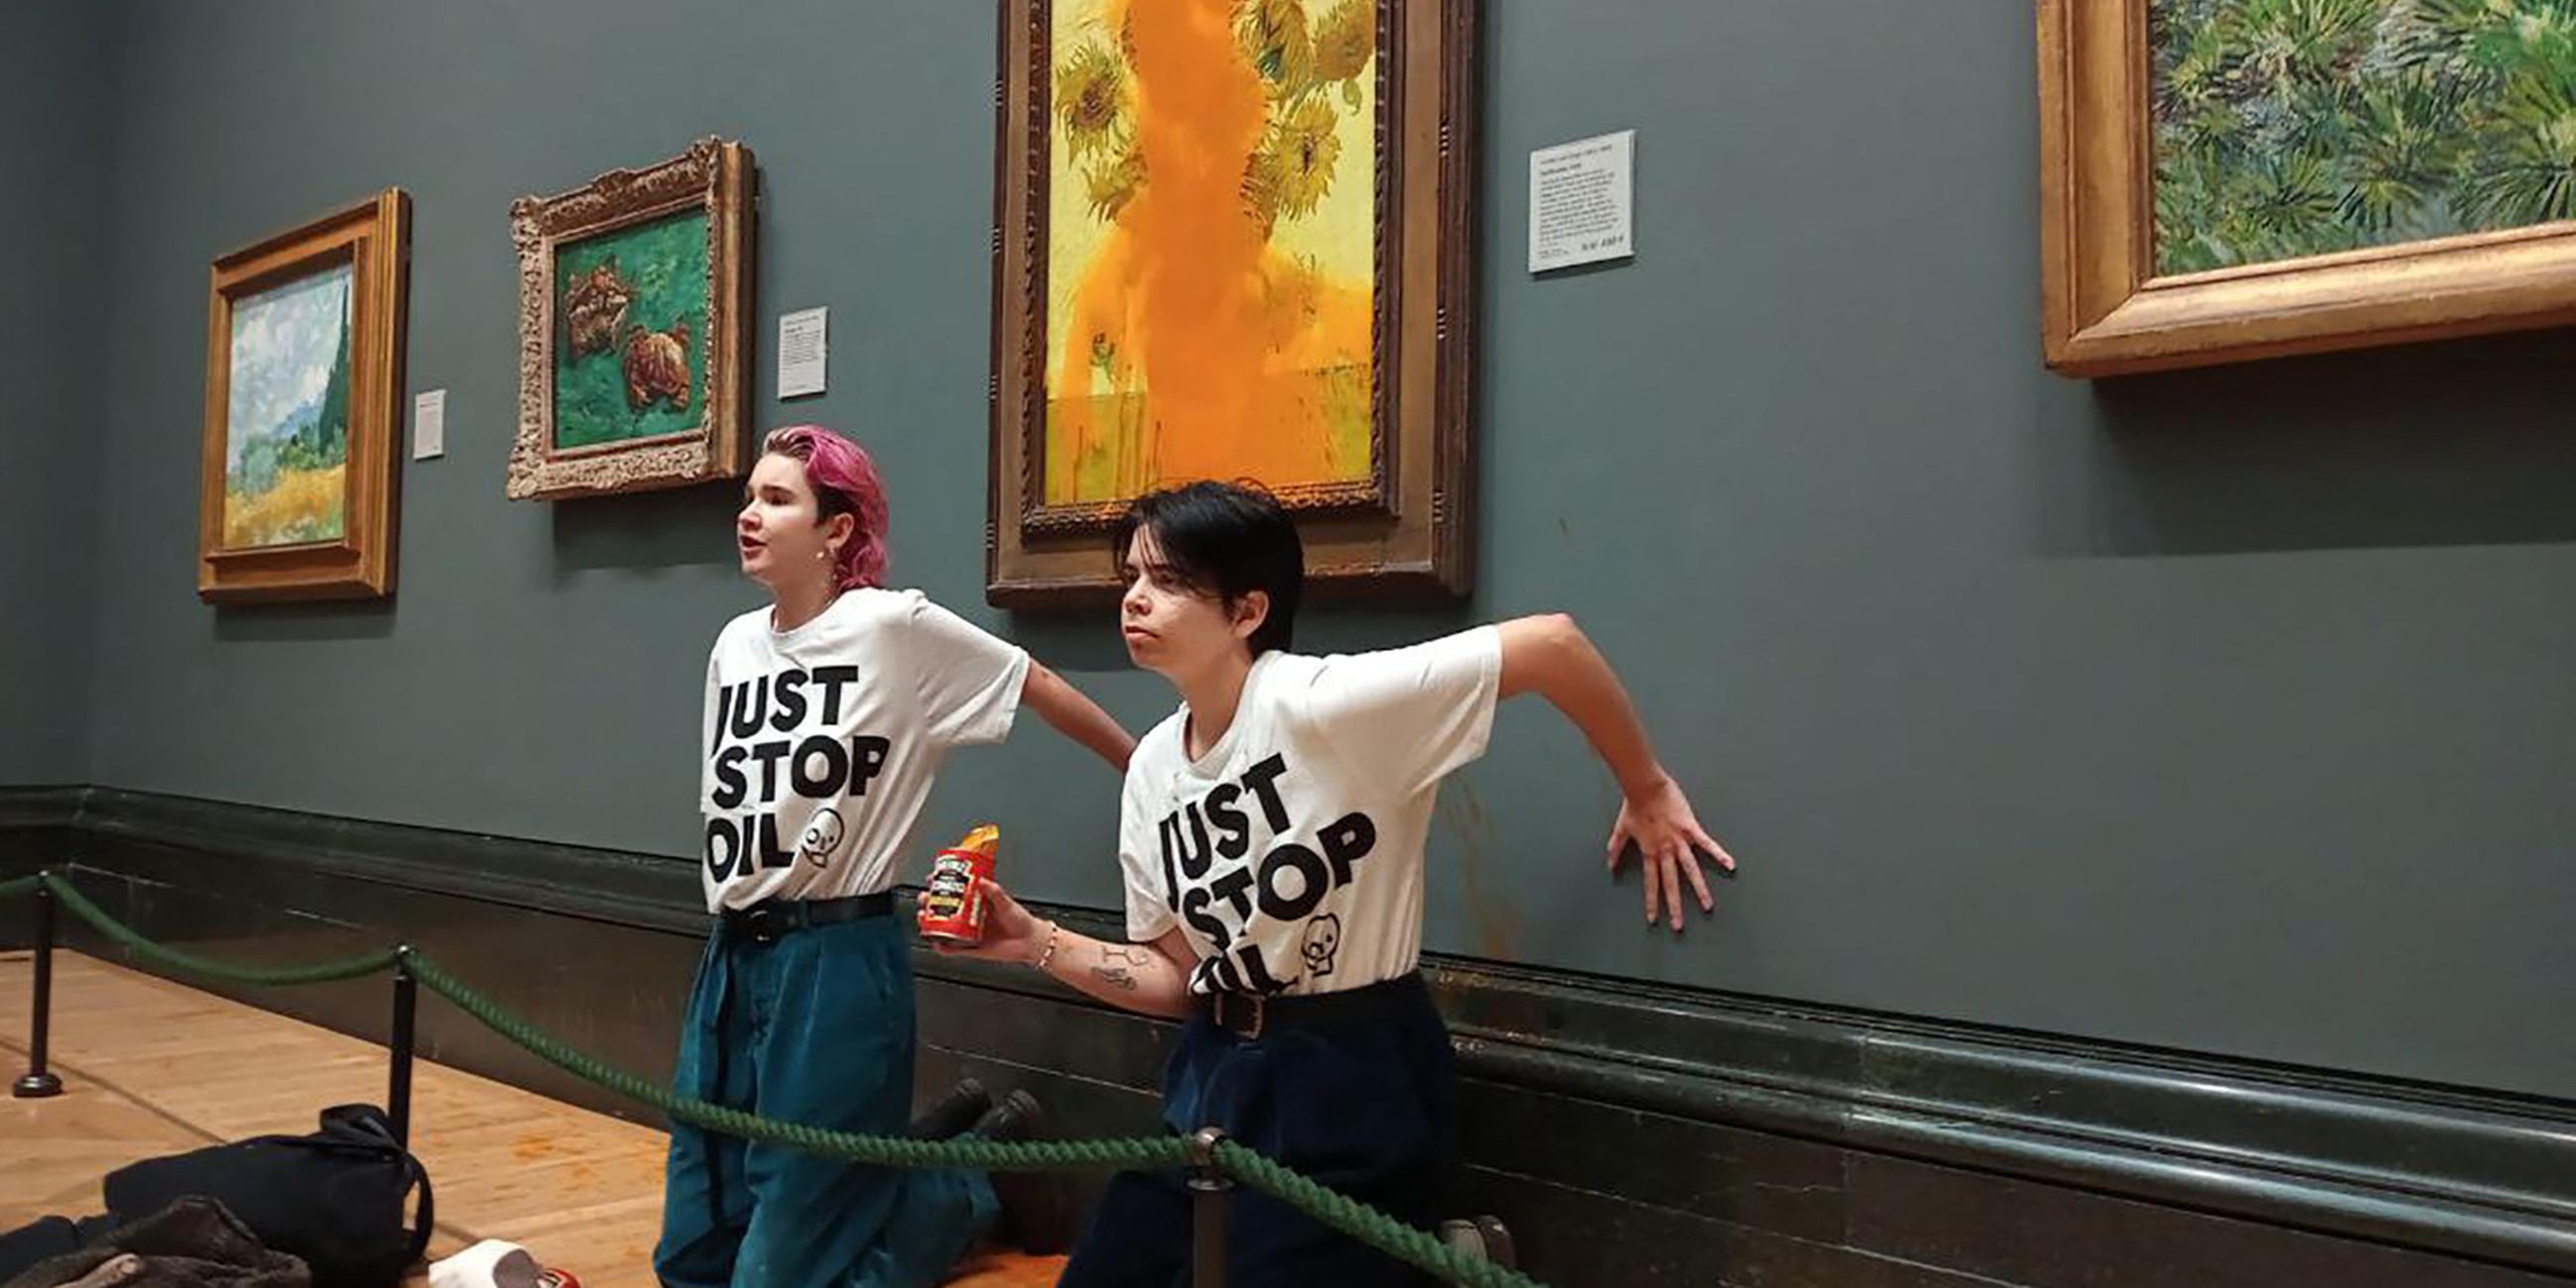 Aktivistinnen der Gruppe "Just Stop Oil" schütten Tomatensuppe auf Van Goghs Gemälde "Sonnenblumen"